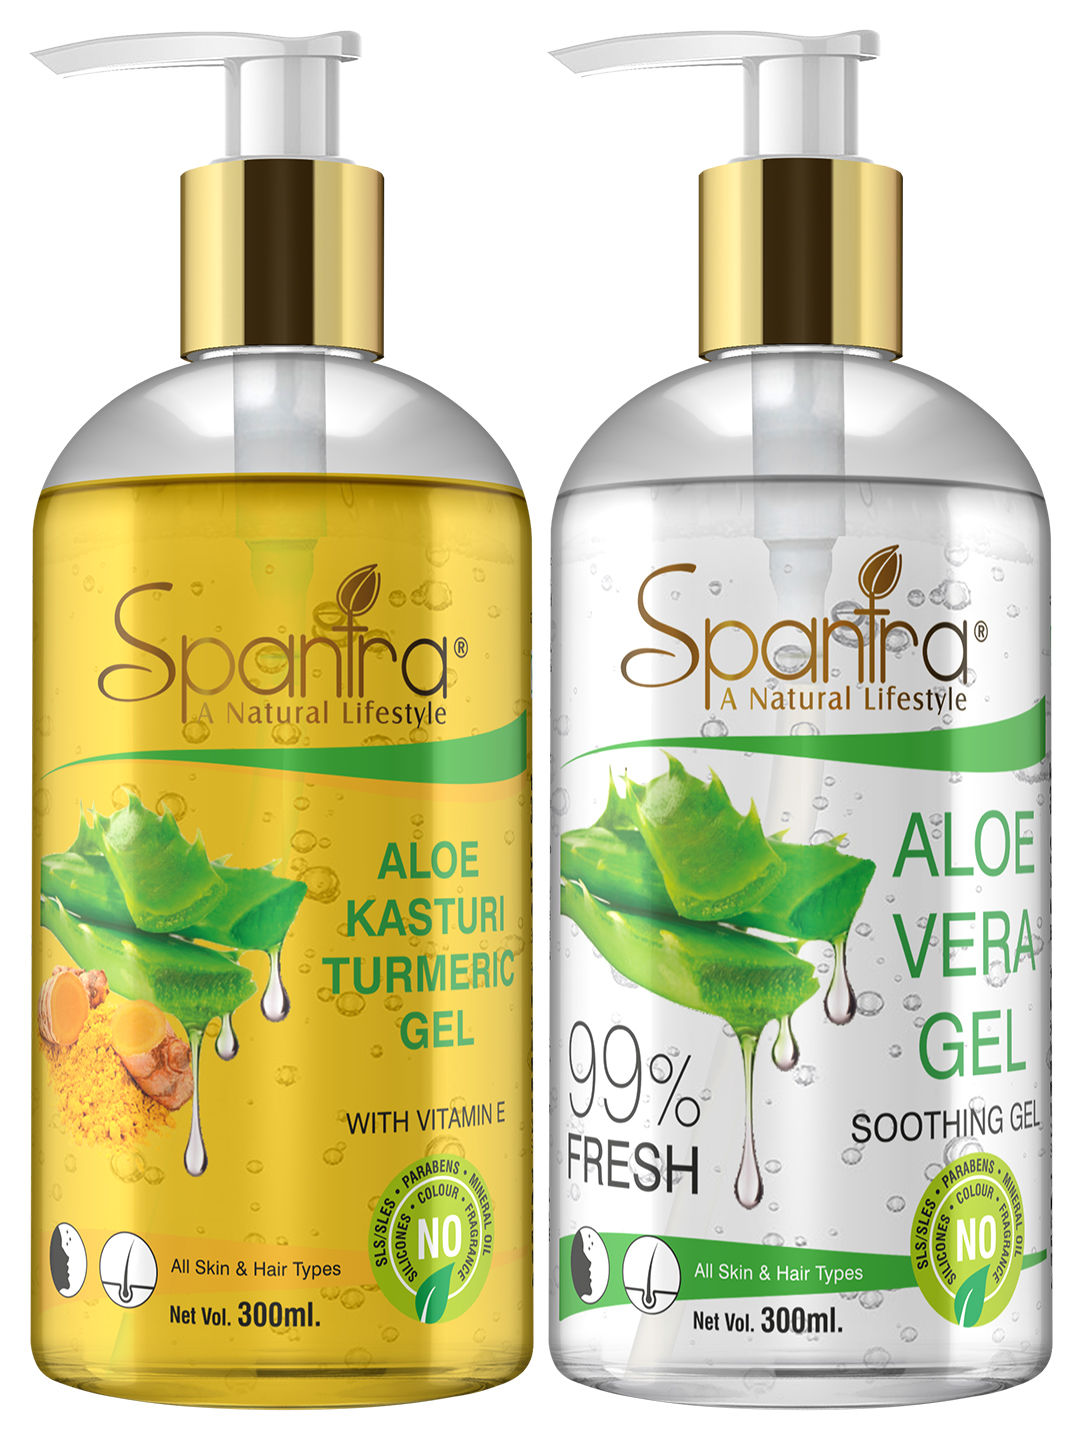 Buy Spantra Aloe Vera Multi Purpose Gel and Kasturi Turmeric Gel, 300ml each, Pack of 2 - Purplle